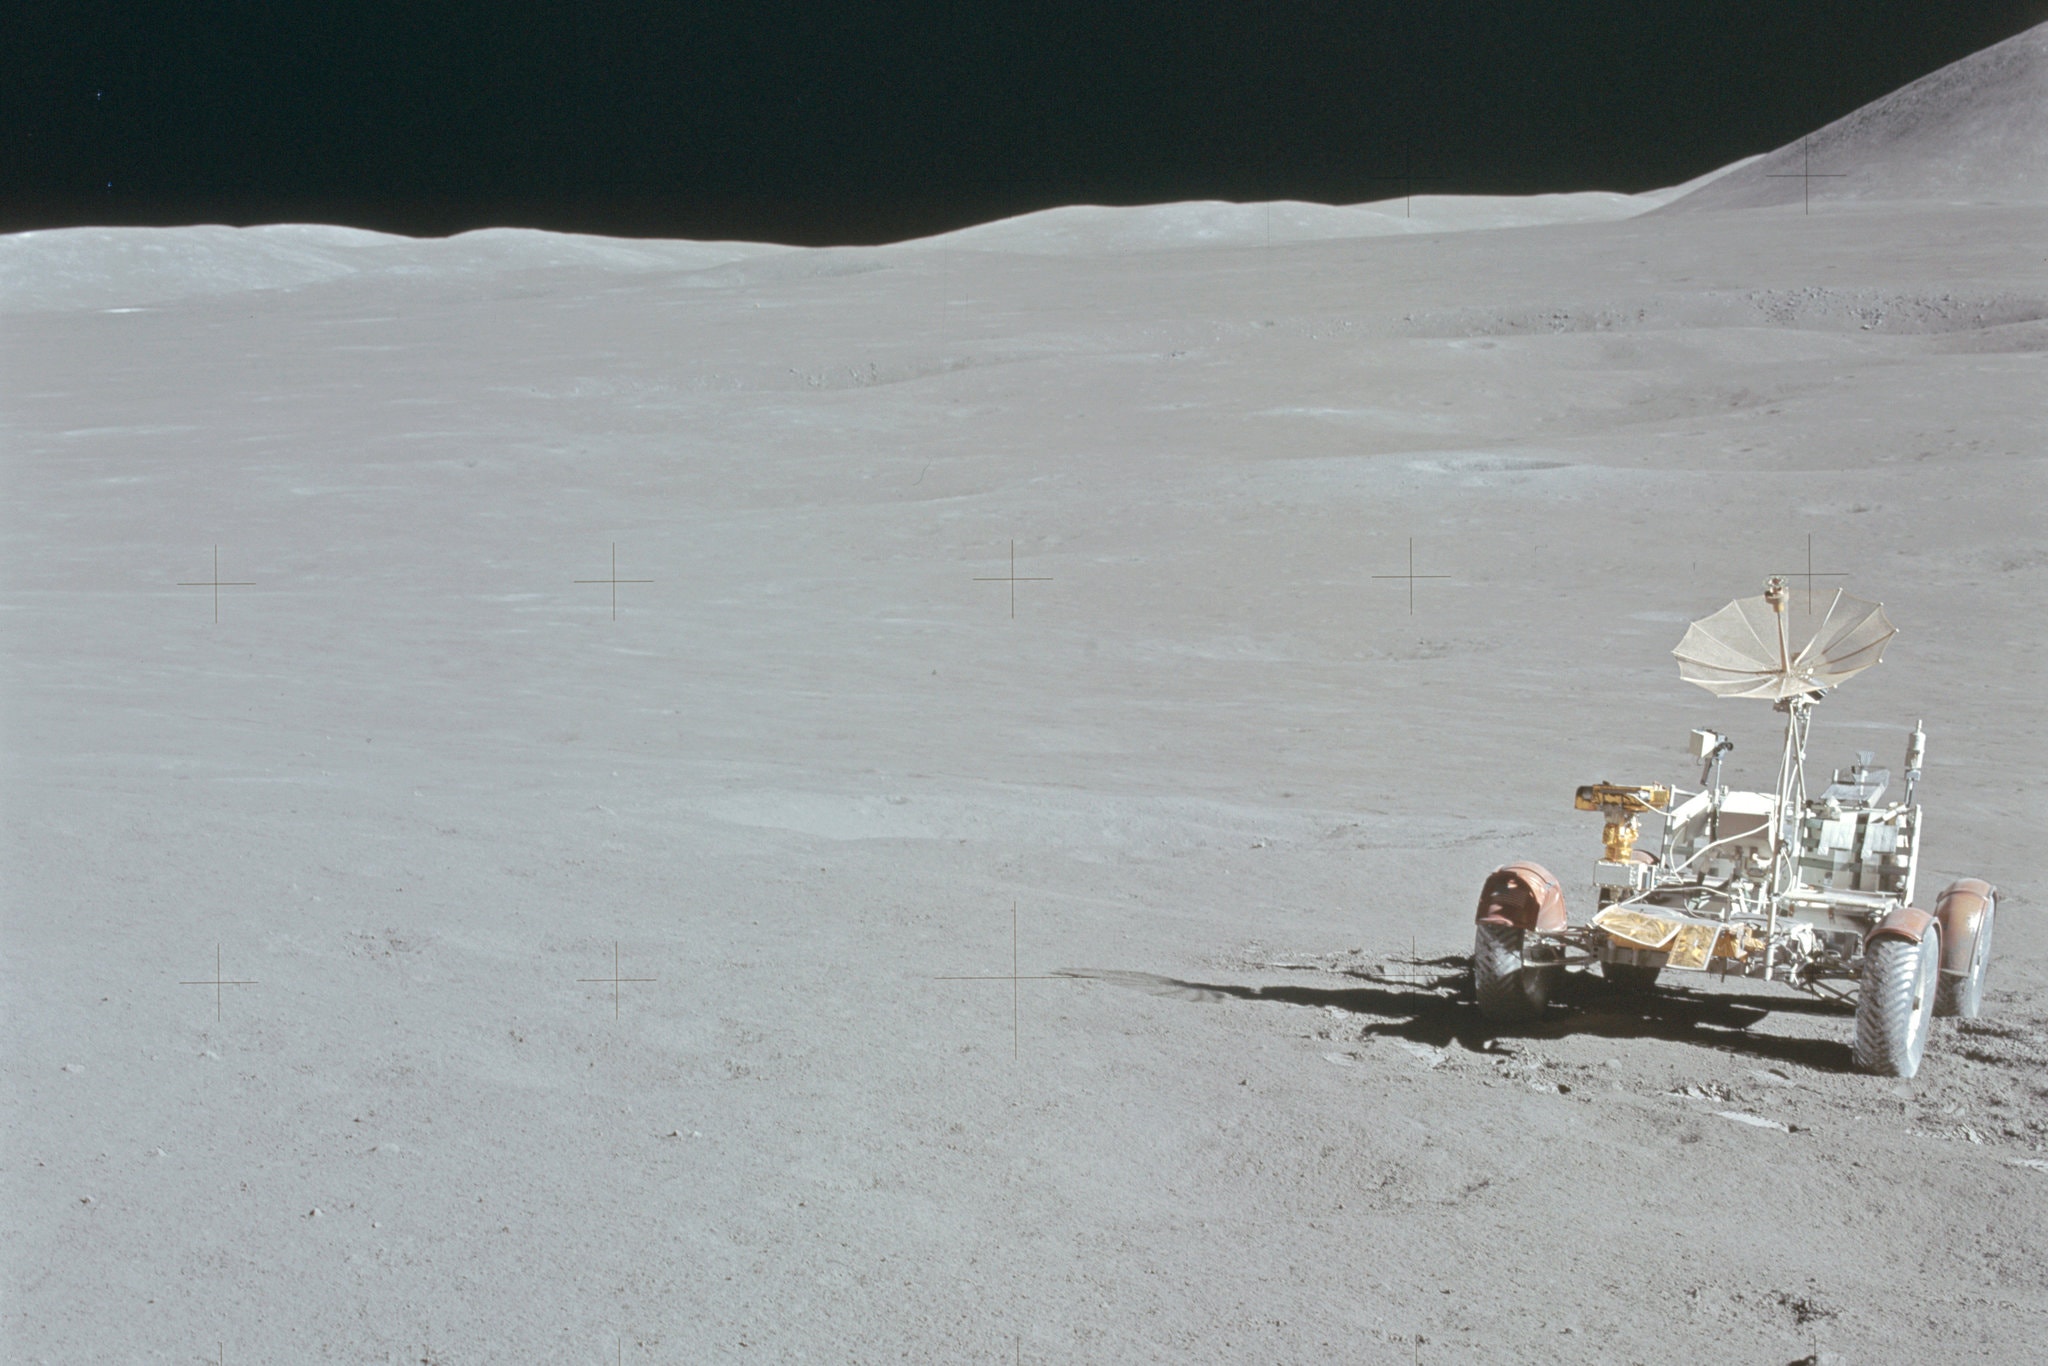  Σεληνιακό ρόβερ που άφησε πίσω της η αποστολή Apollo 15 το 1971.